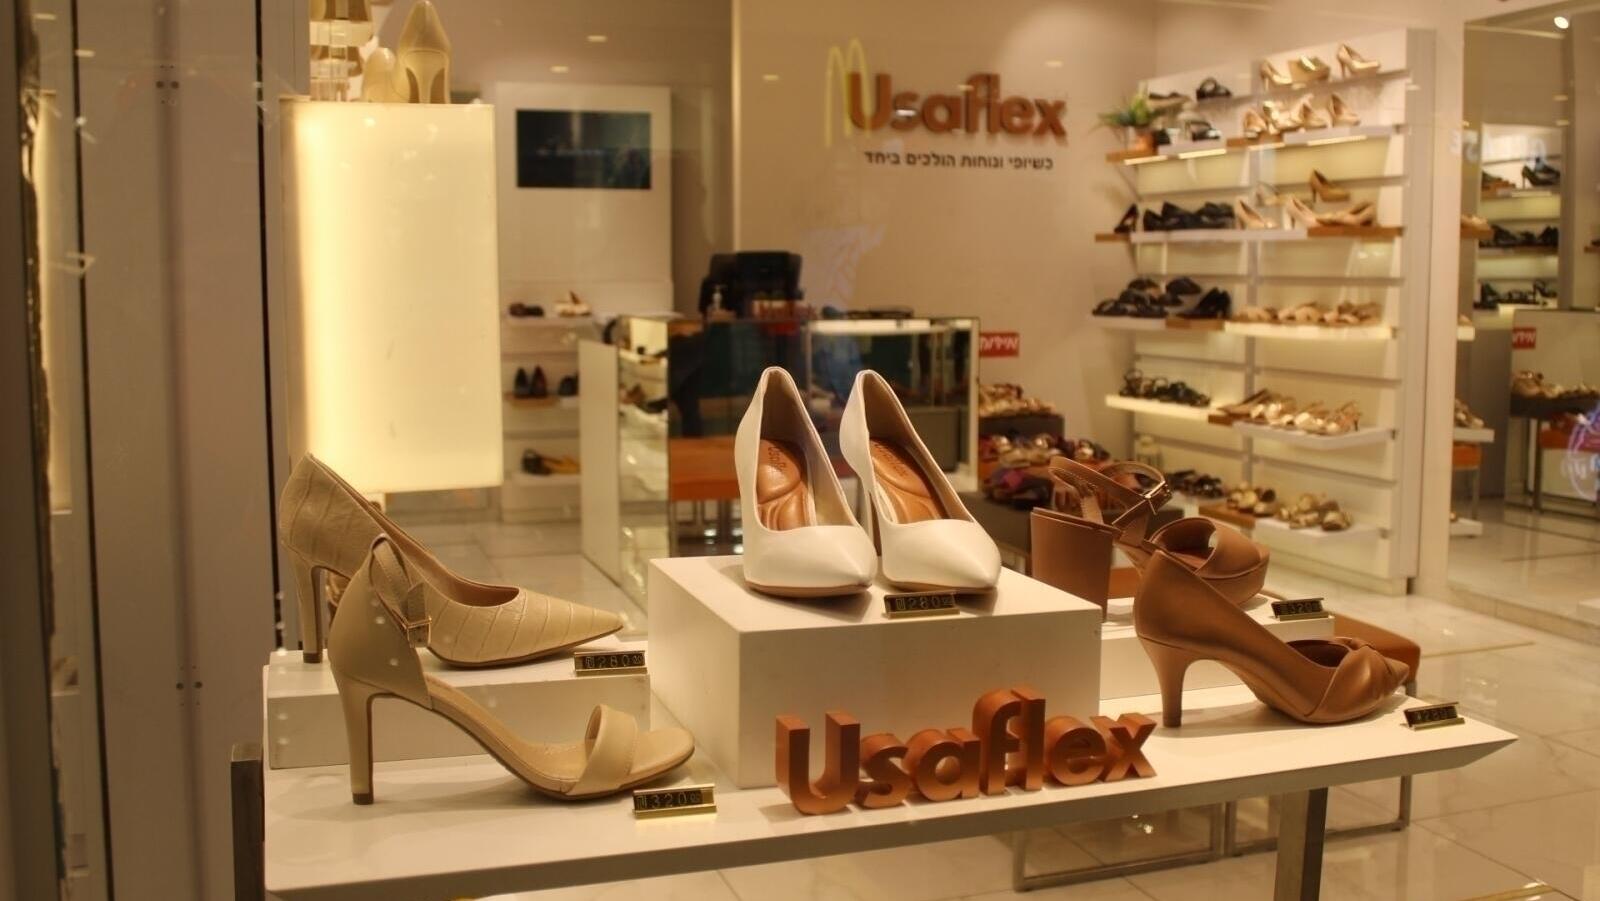 Usaflex - שילוב מושלם של נוחות, אופנה ועור.